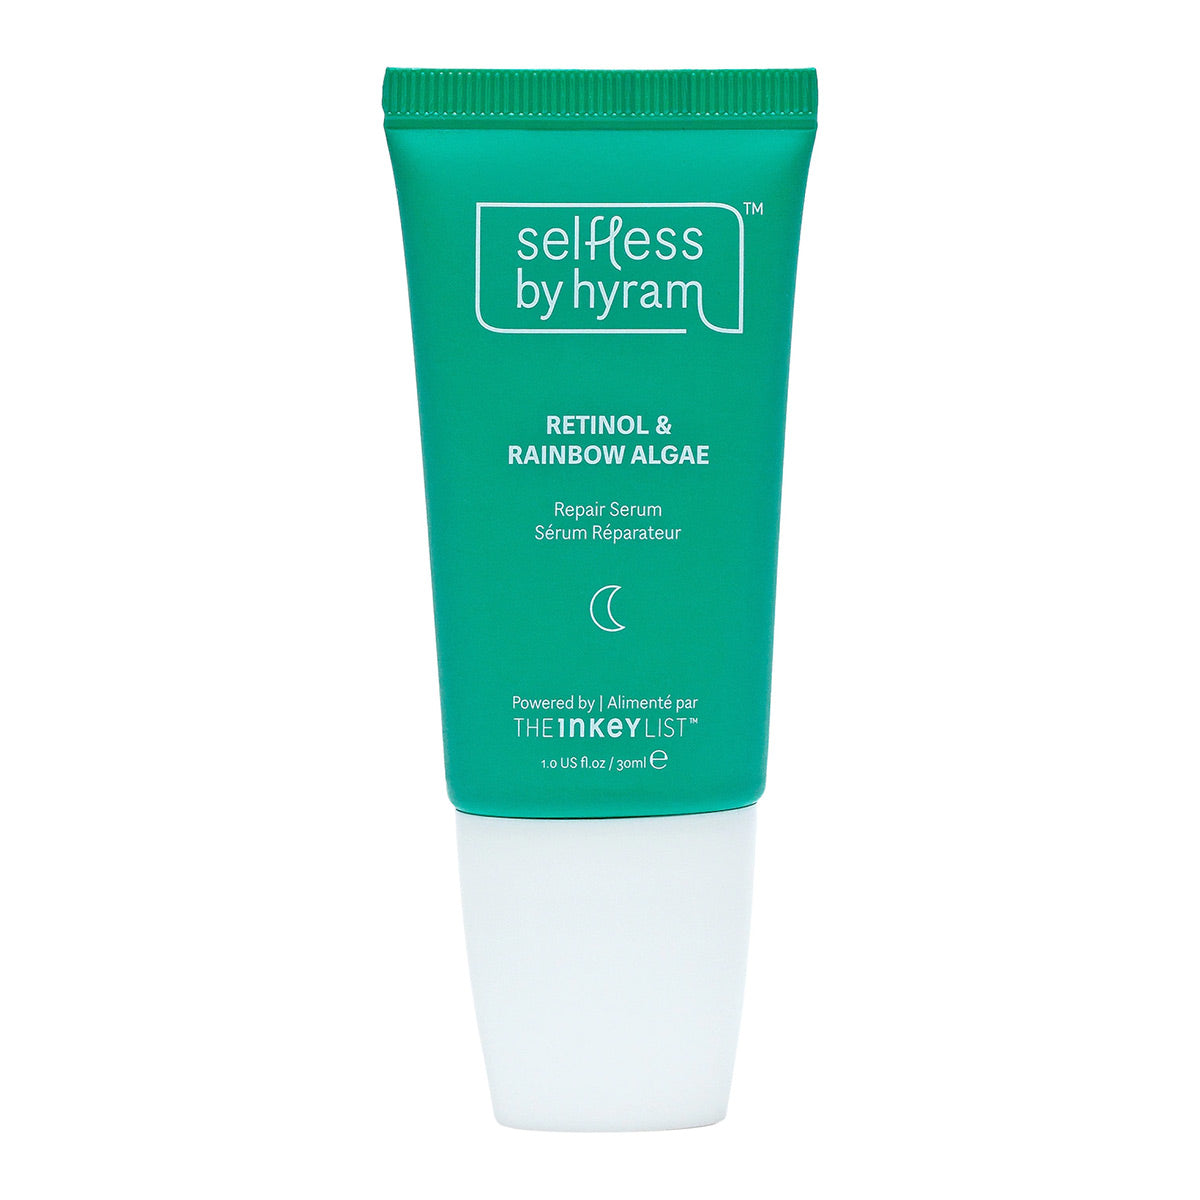 Selfless by Hyram Retinol & Rainbow Algae Repair Serum 30 ml